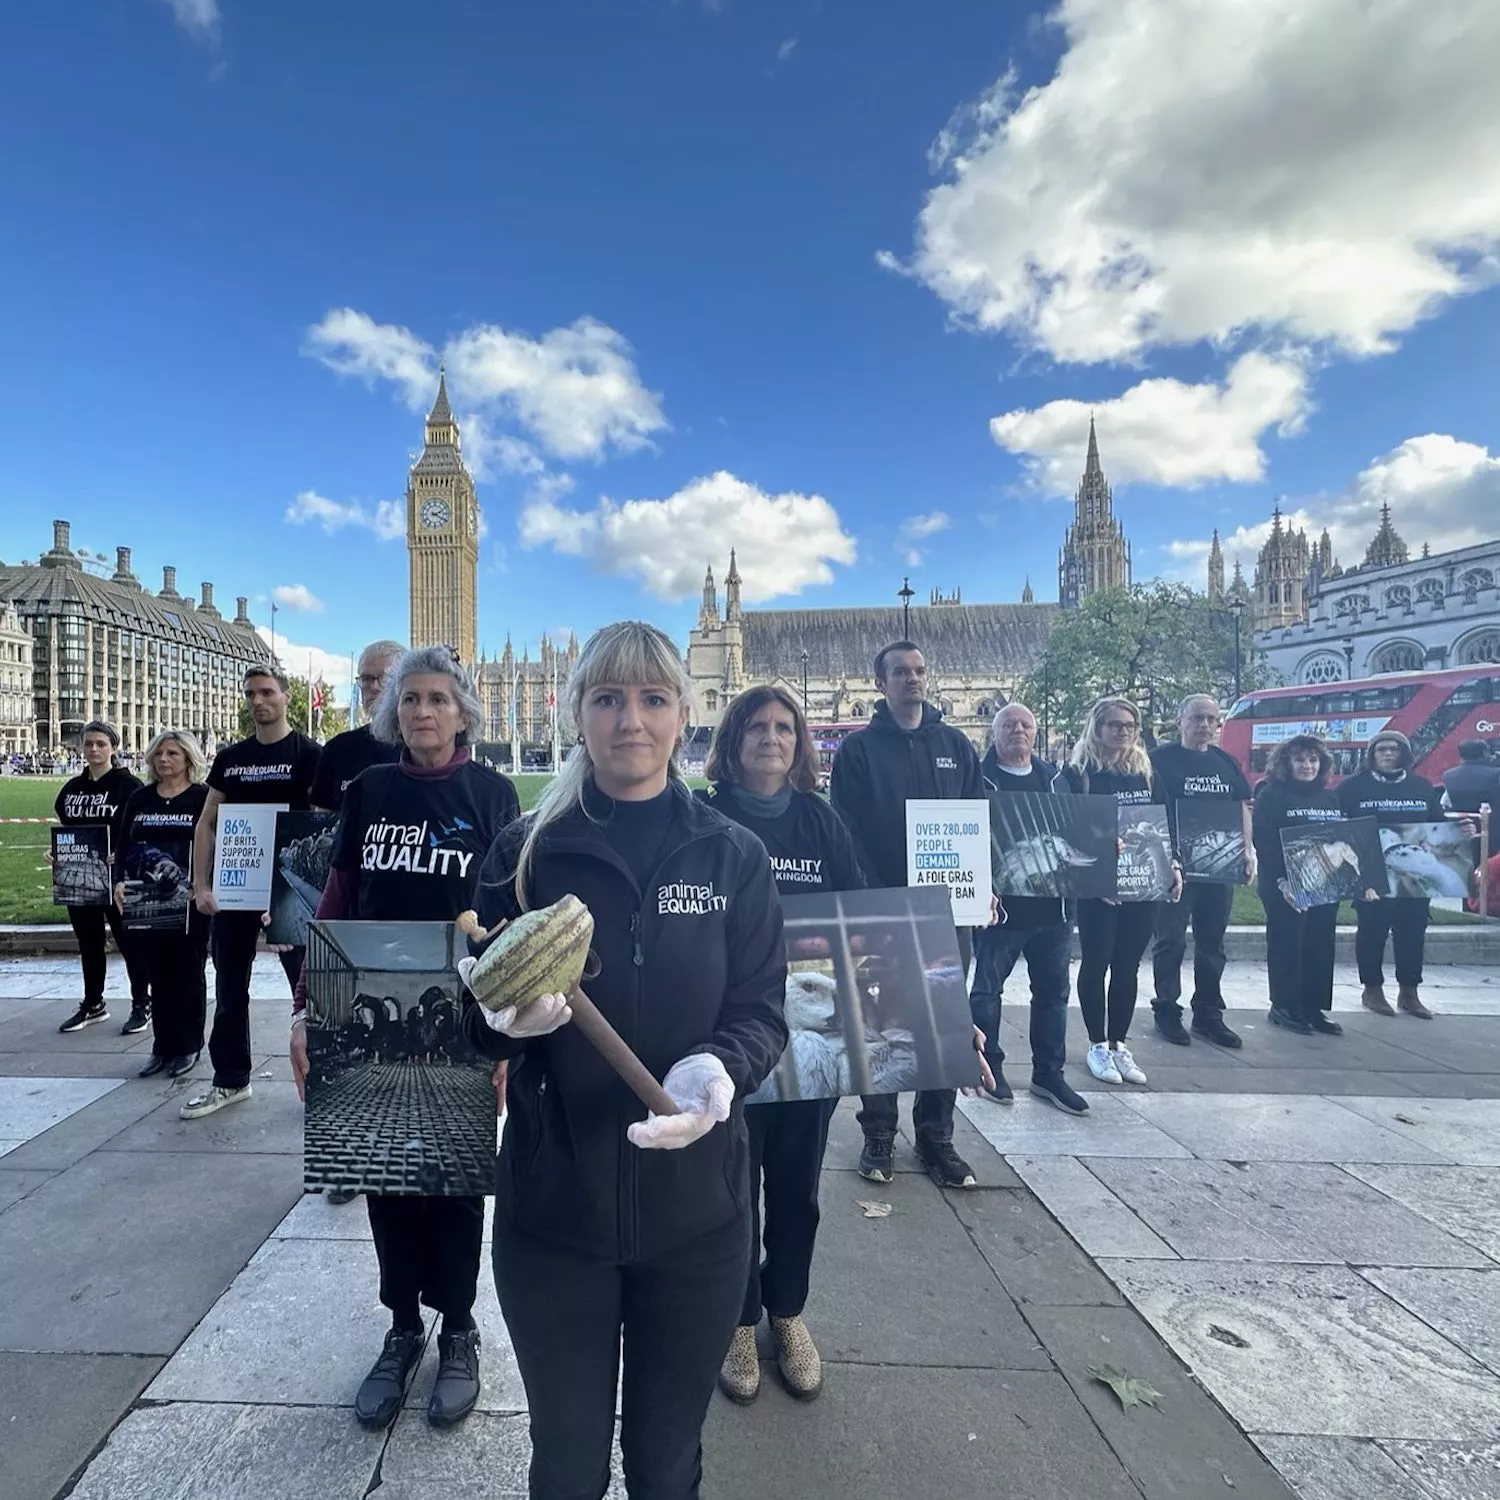 Protesta de Igualdad Animal en Londres contra el foie gras